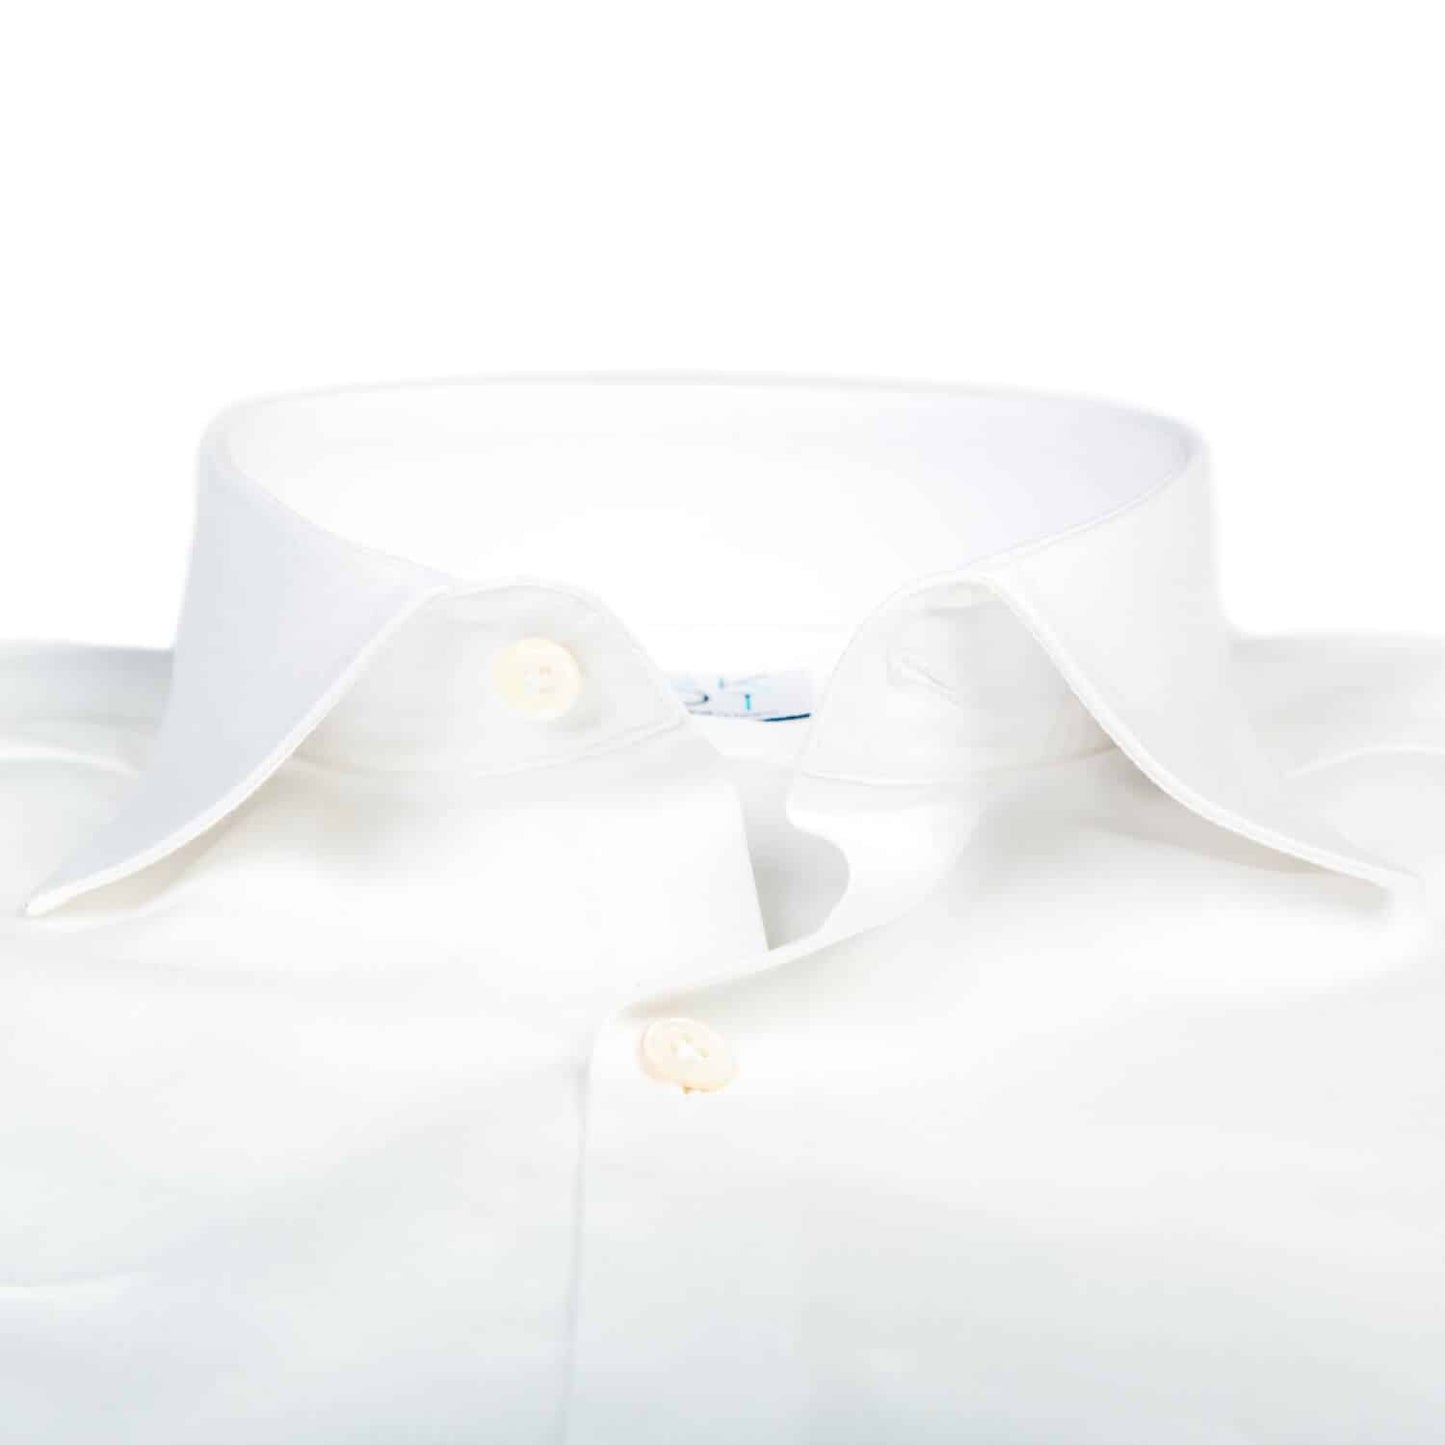 Overhemd - Slim Fit - Serious White (Laatste voorraad)